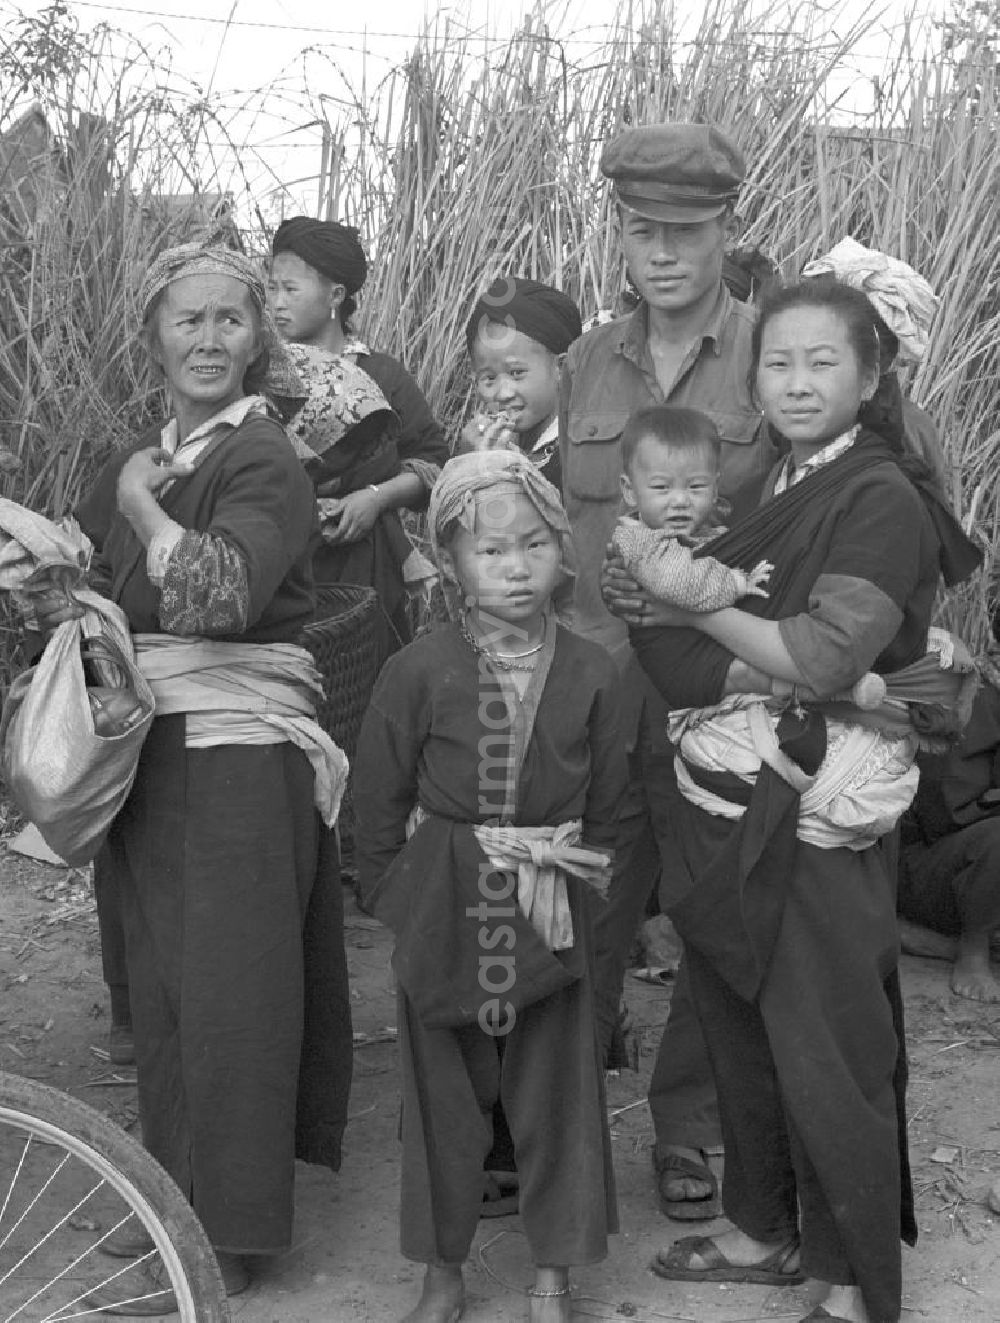 GDR picture archive: Xieng Khouang - Frauen und Soldaten aus dem Volksstamm der Meo (auch Hmong) auf einer Straße nahe sogenannten Ebene der Tonkrüge in der Provinz Xieng Khouang in der Demokratischen Volksrepublik Laos. Die Hmong waren im Vietnam-Krieg involviert. In dessen Folge gehörten sie zu einer verfolgten und zurückgezogen lebenden Minderheit in Laos.